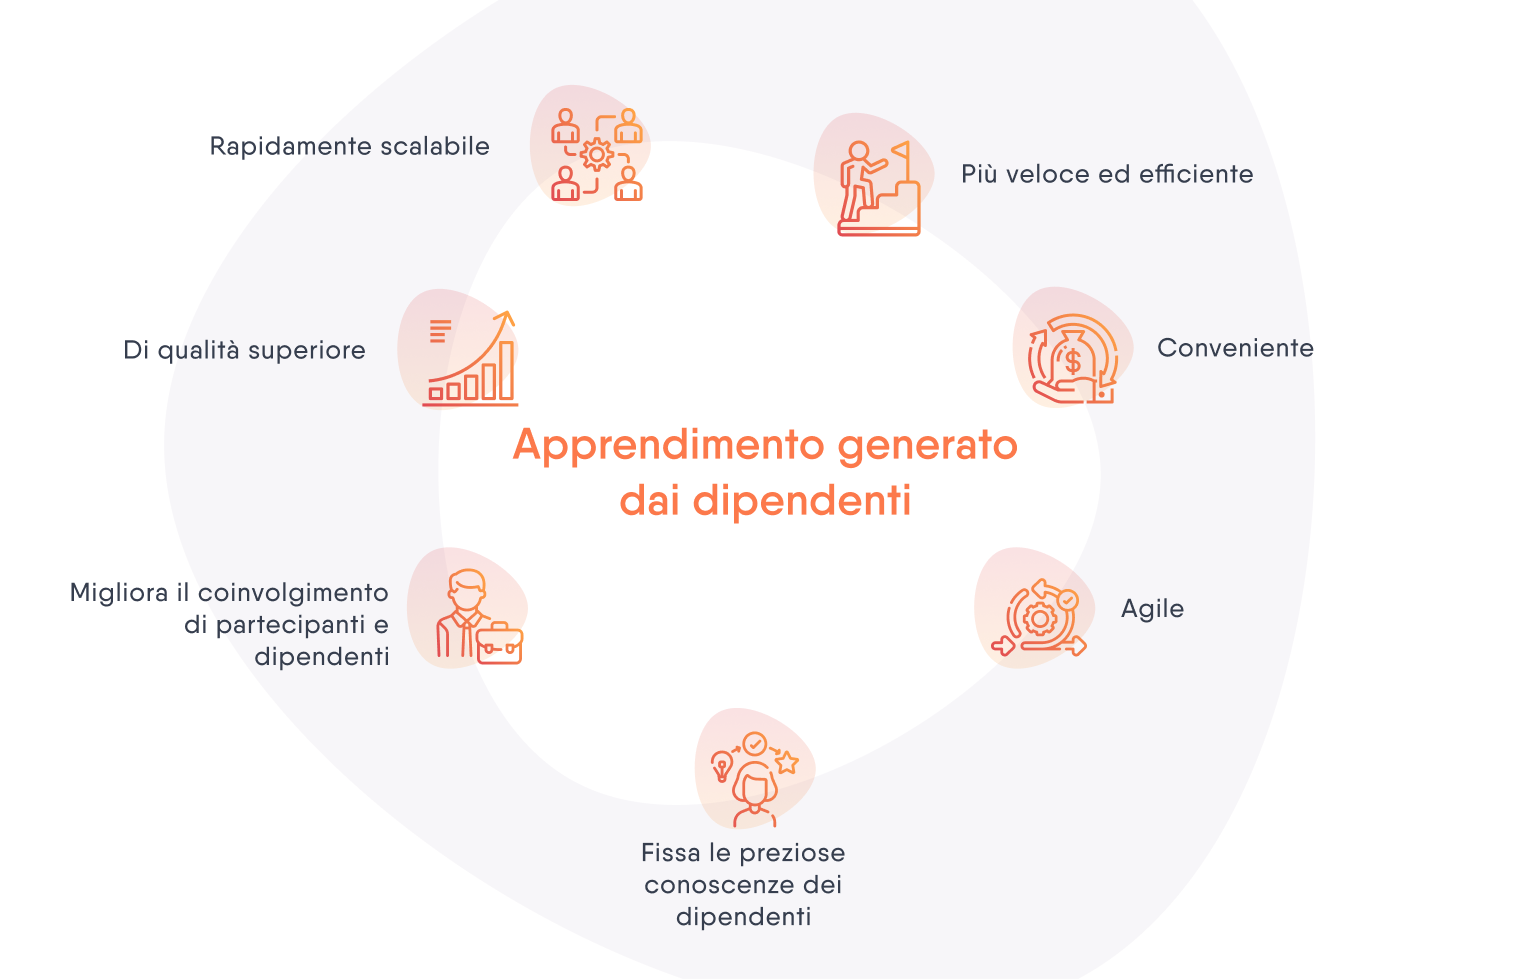 Grafico con icone arancioni e didascalie nere che mostra i vantaggi dell'apprendimento generato dai dipendenti.